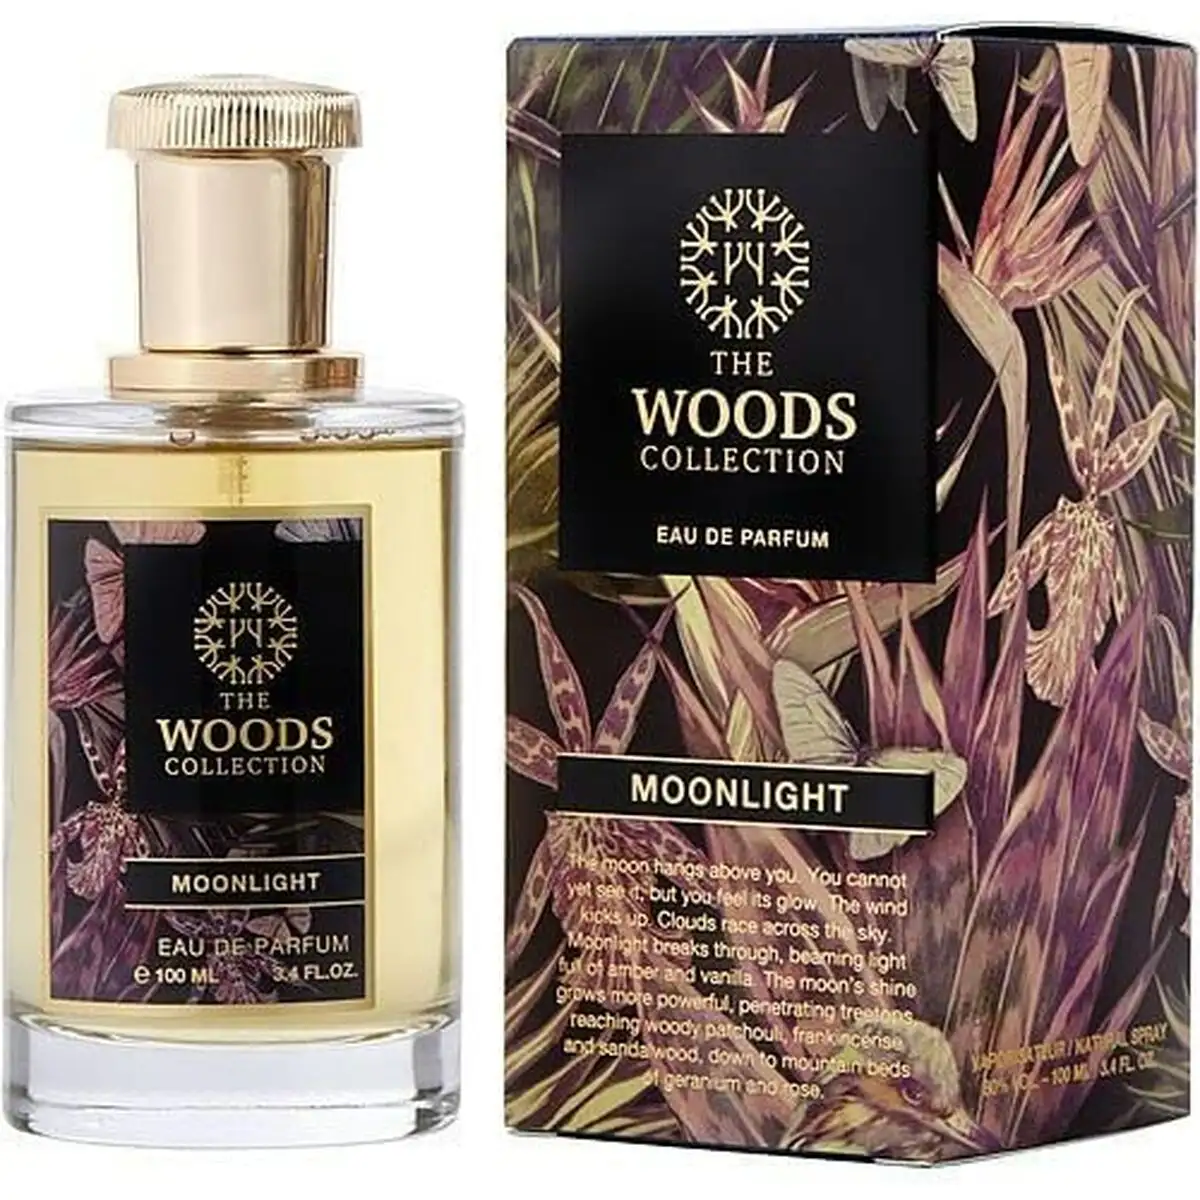 Parfum unisexe the woods collection edp 100 ml moonlight_1491. DIAYTAR SENEGAL - Où Choisir Devient une Découverte. Explorez notre boutique en ligne et trouvez des articles qui vous surprennent et vous ravissent à chaque clic.